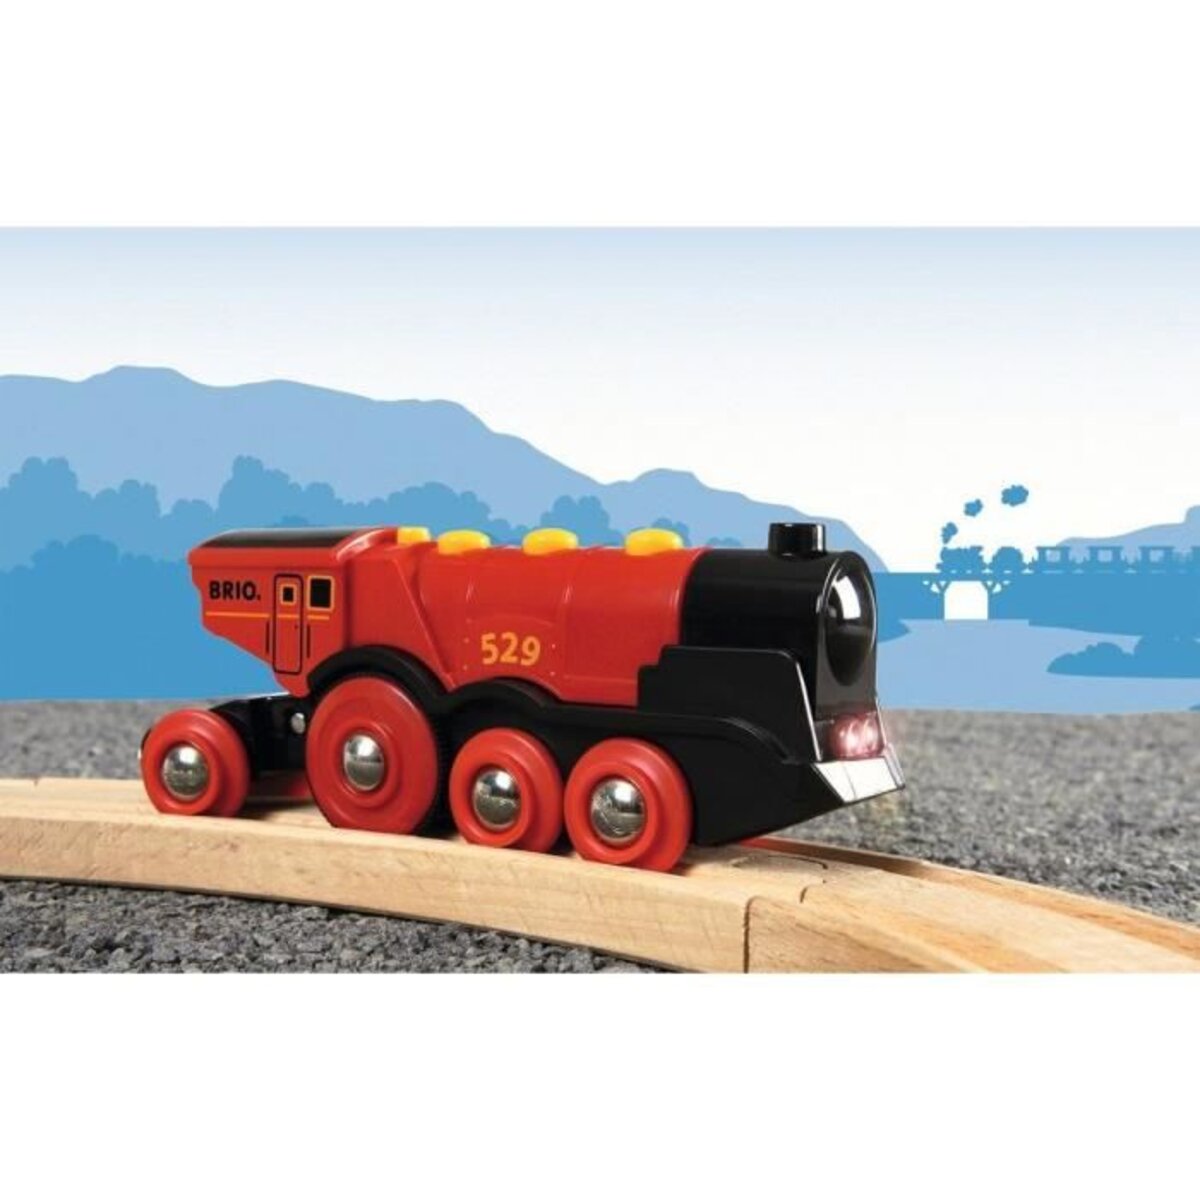 Brio World - Locomotive rouge - A Piles - Train électrique idéal